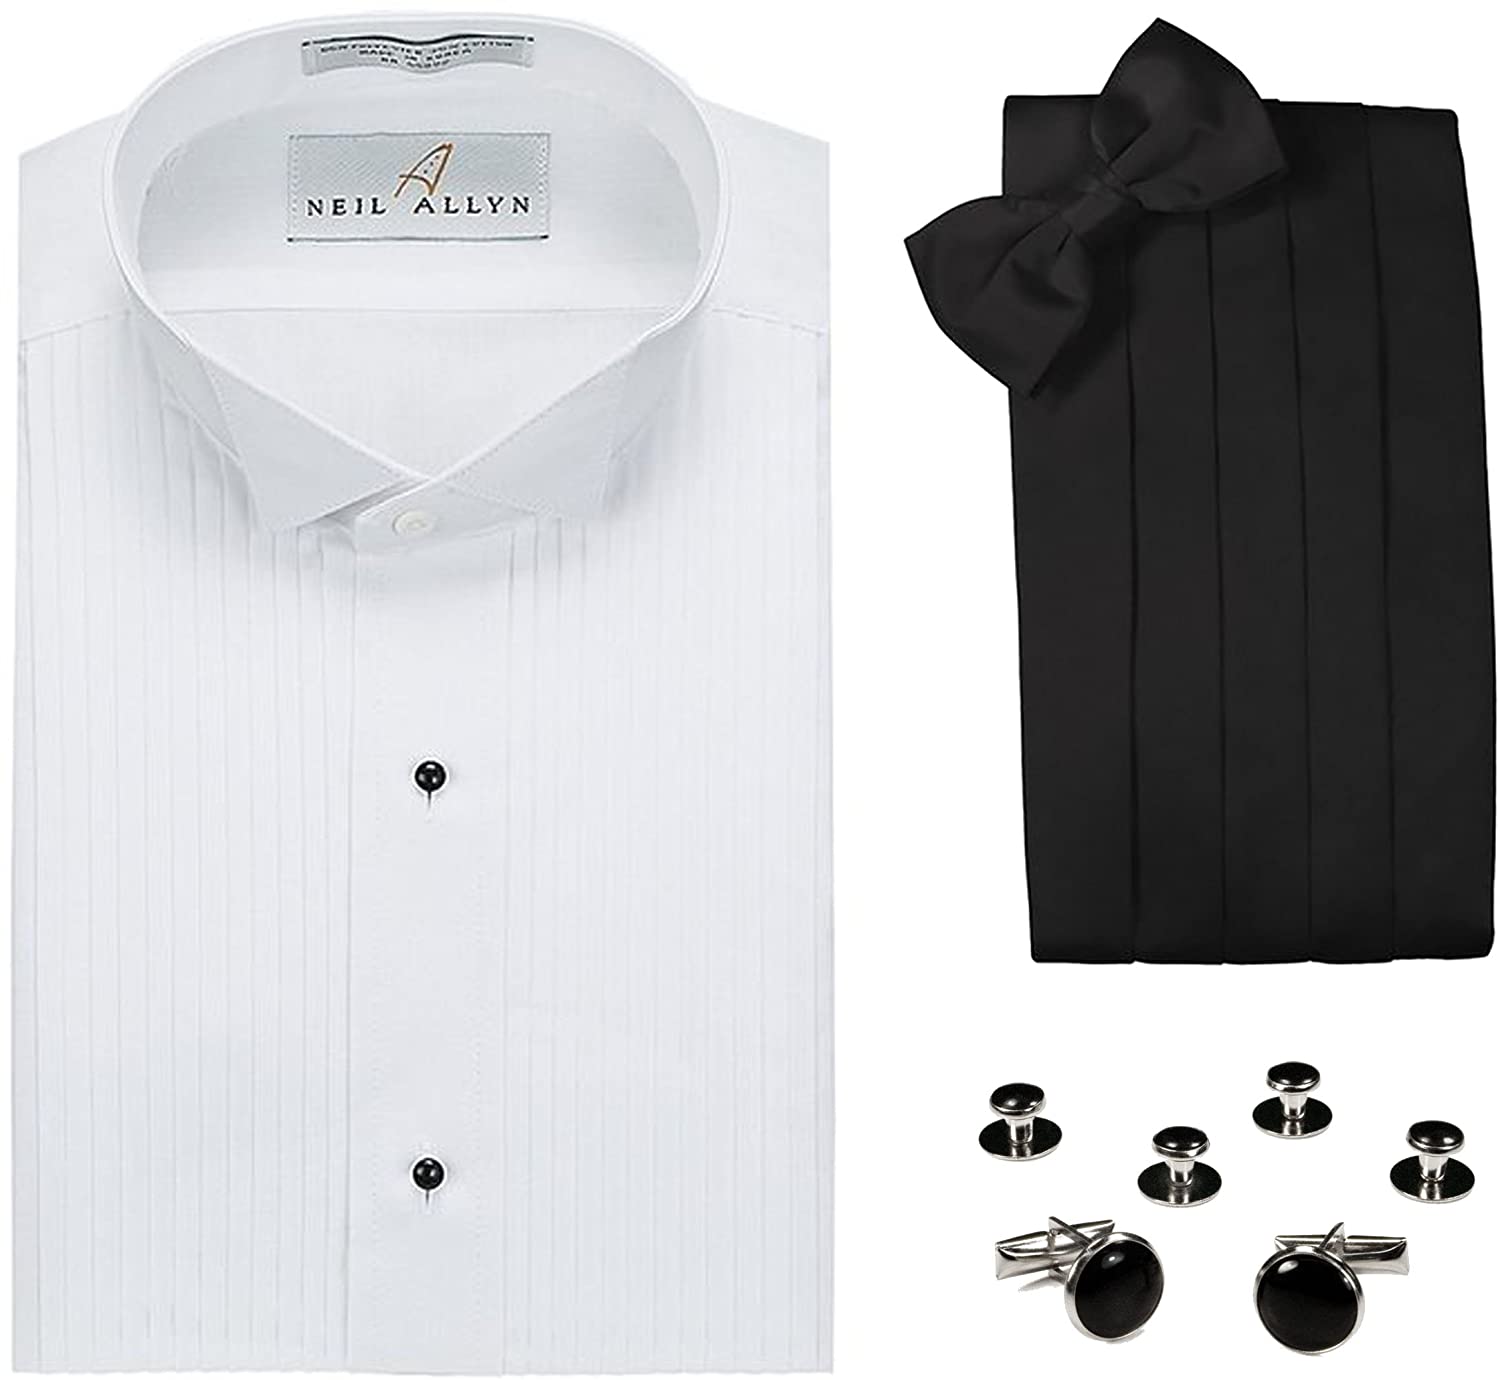 Neil Allyn Tuxedo Shirt, Cummerbund, Bow Tie, Cufflink & Studs Set